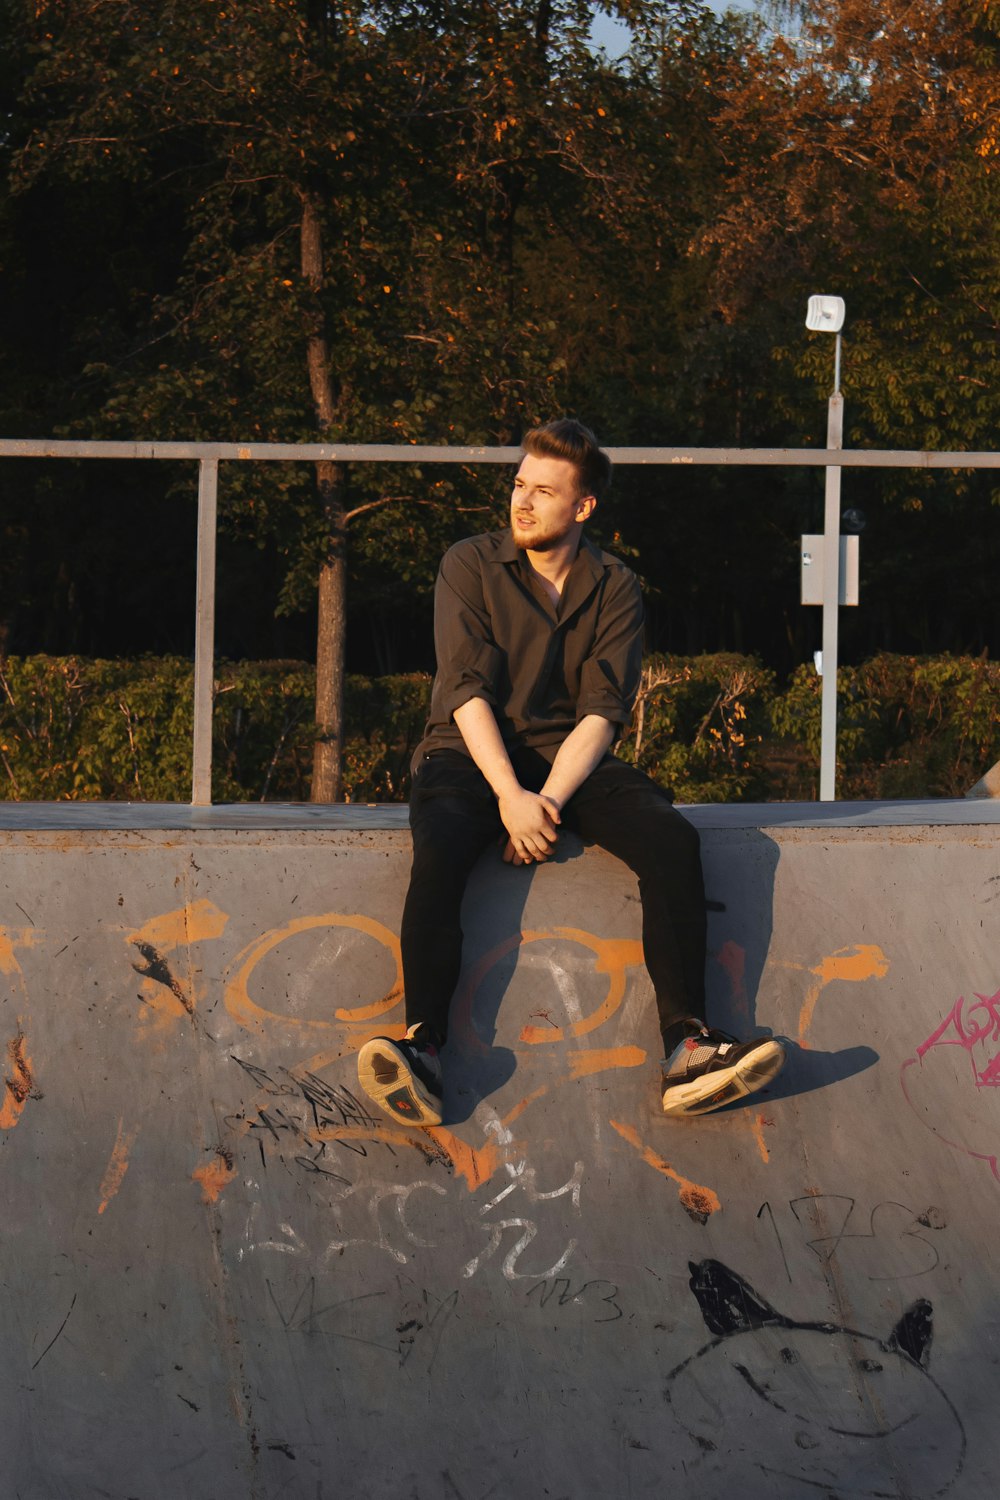 a man sitting on a skateboard